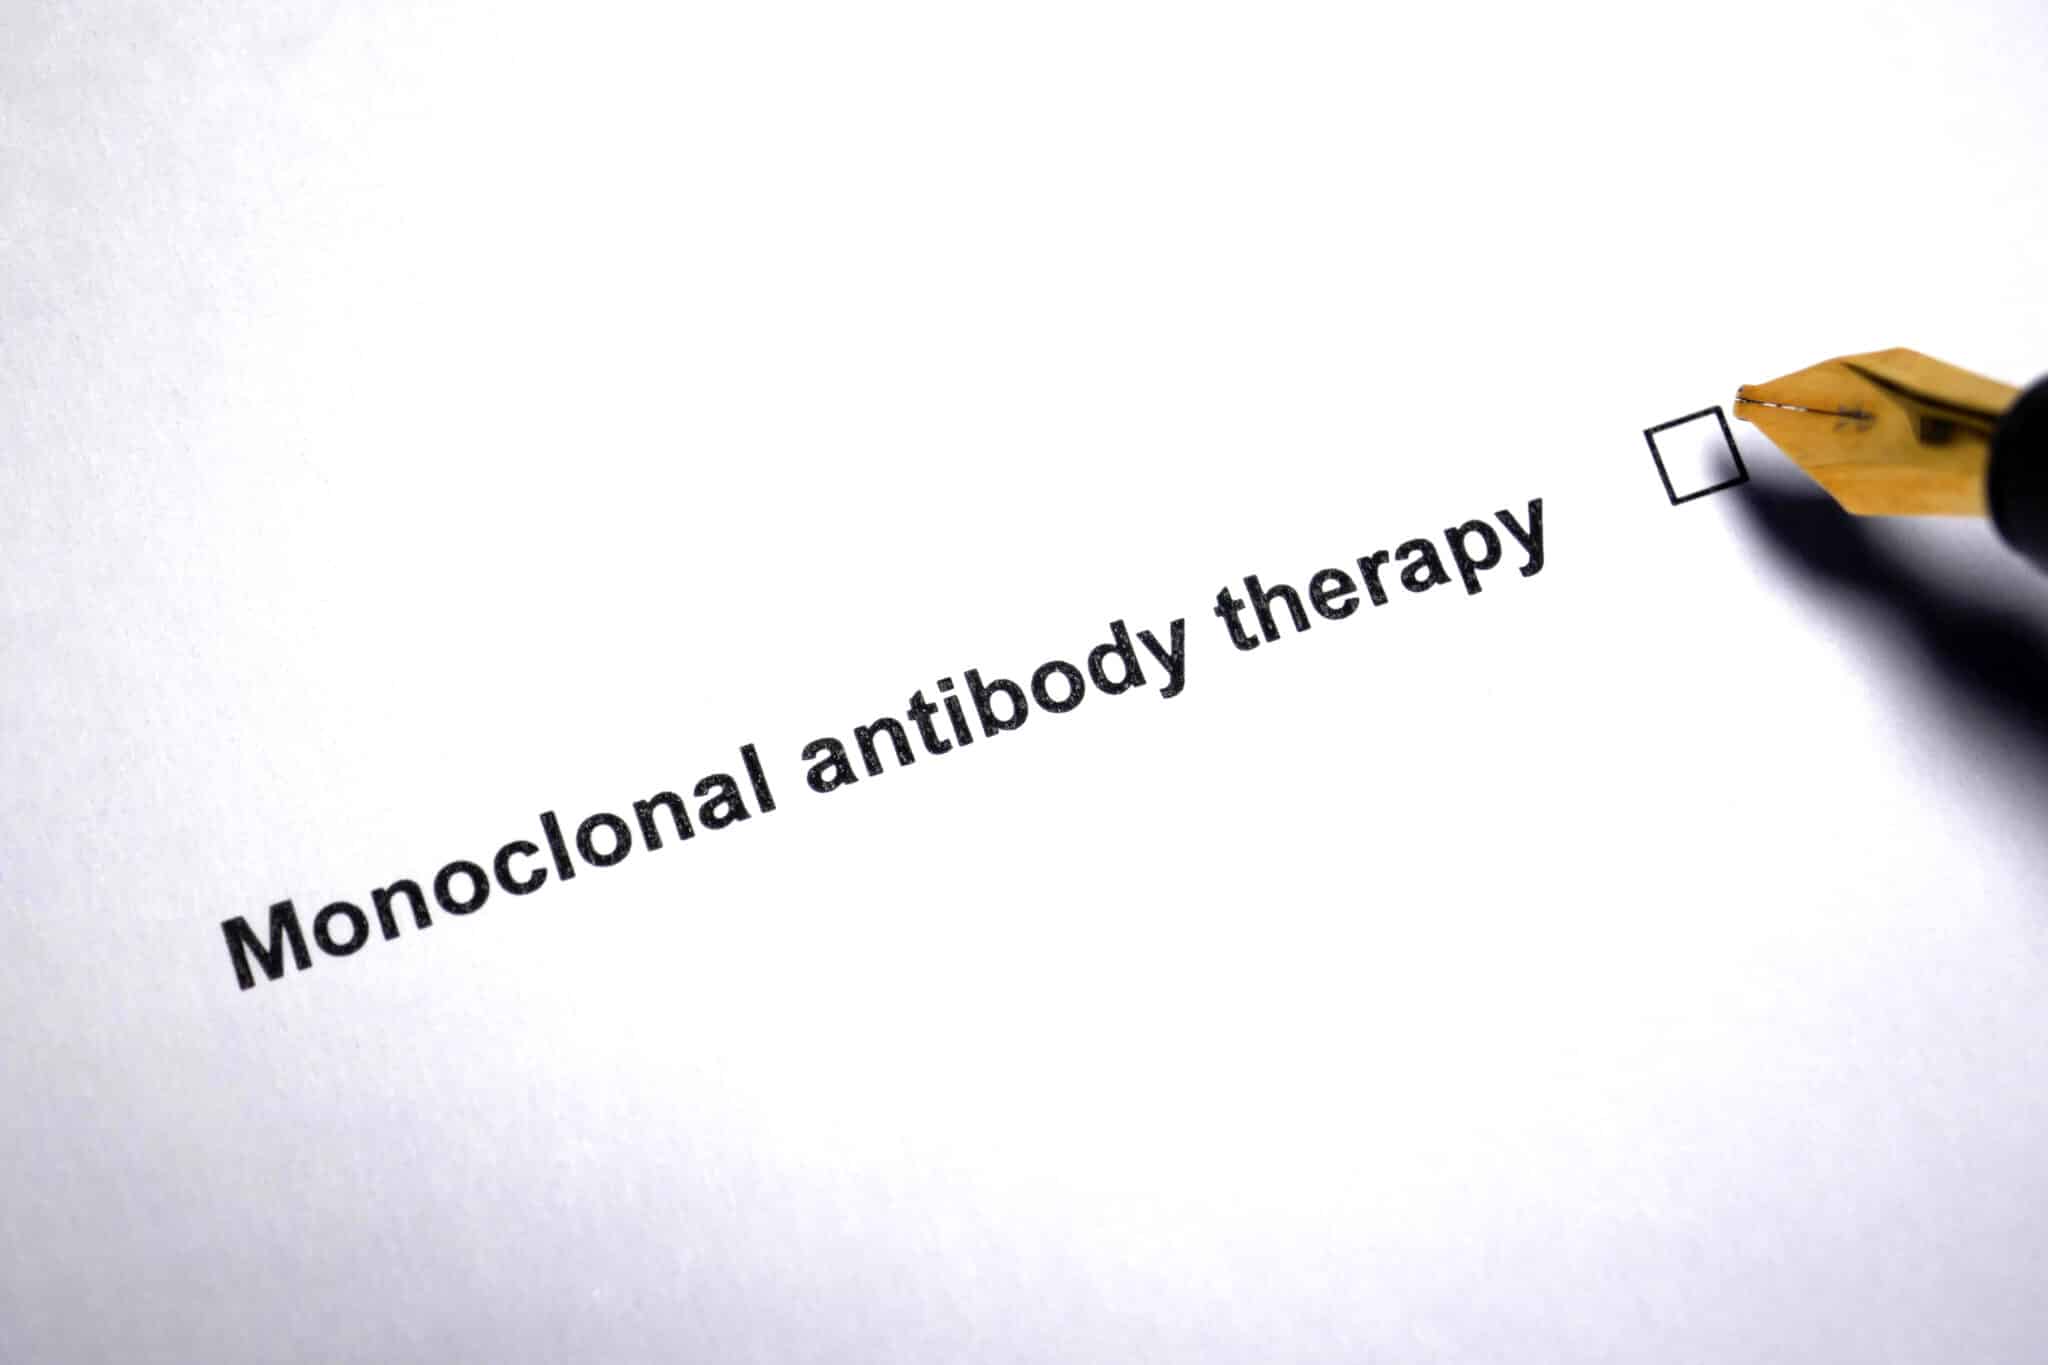 Suivi thérapeutique des anticorps monoclonaux